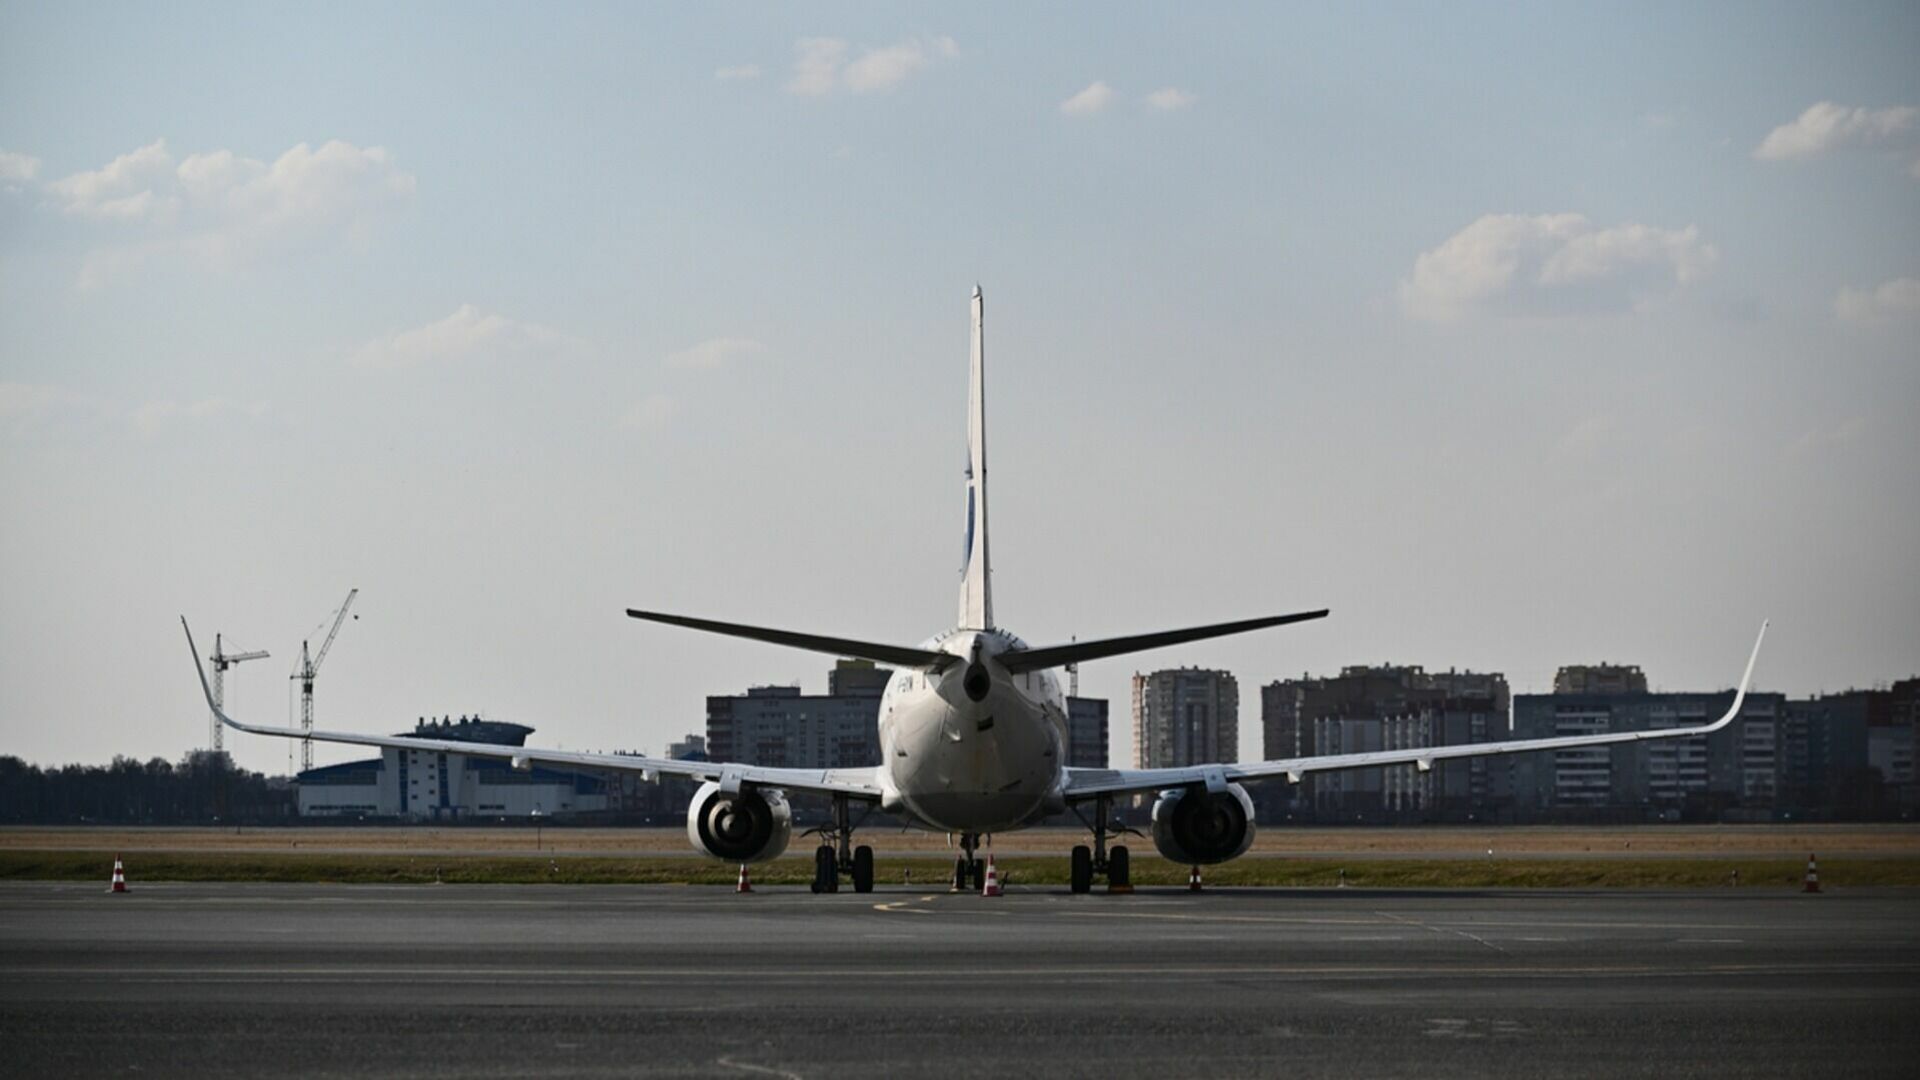 Списанный самолет выкатили на взлетку старого аэропорта в Ростове-на-Дону в октябре